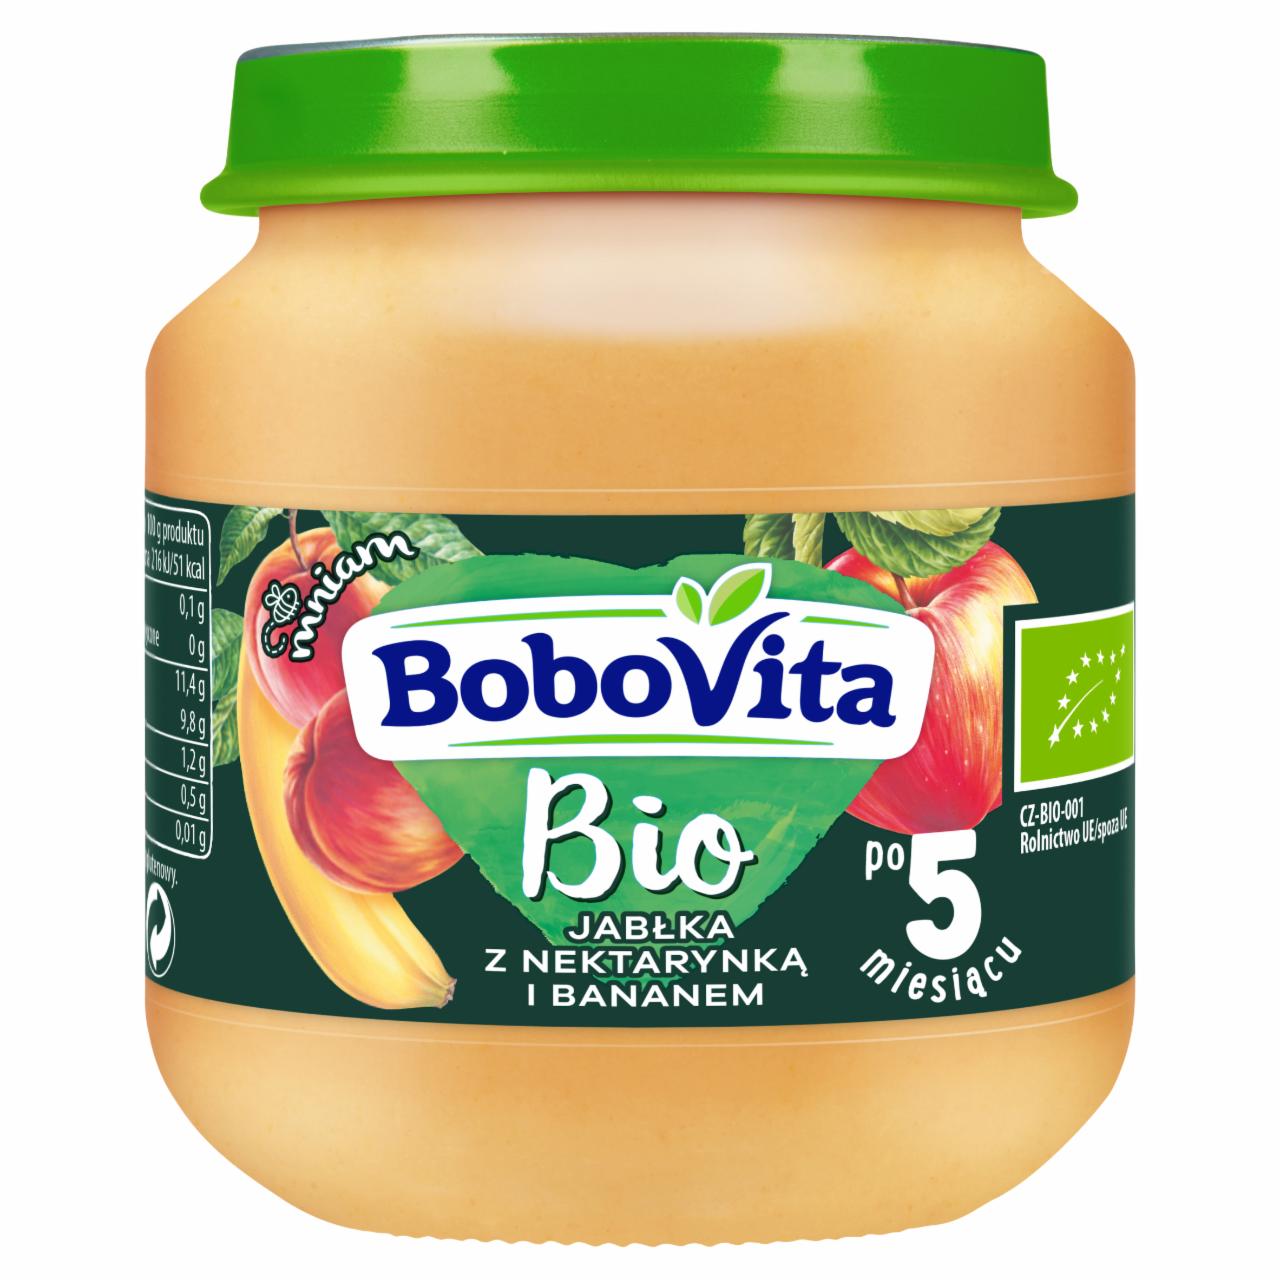 Zdjęcia - BoboVita Bio Jabłka z nektarynką i bananem po 5 miesiącu 125 g